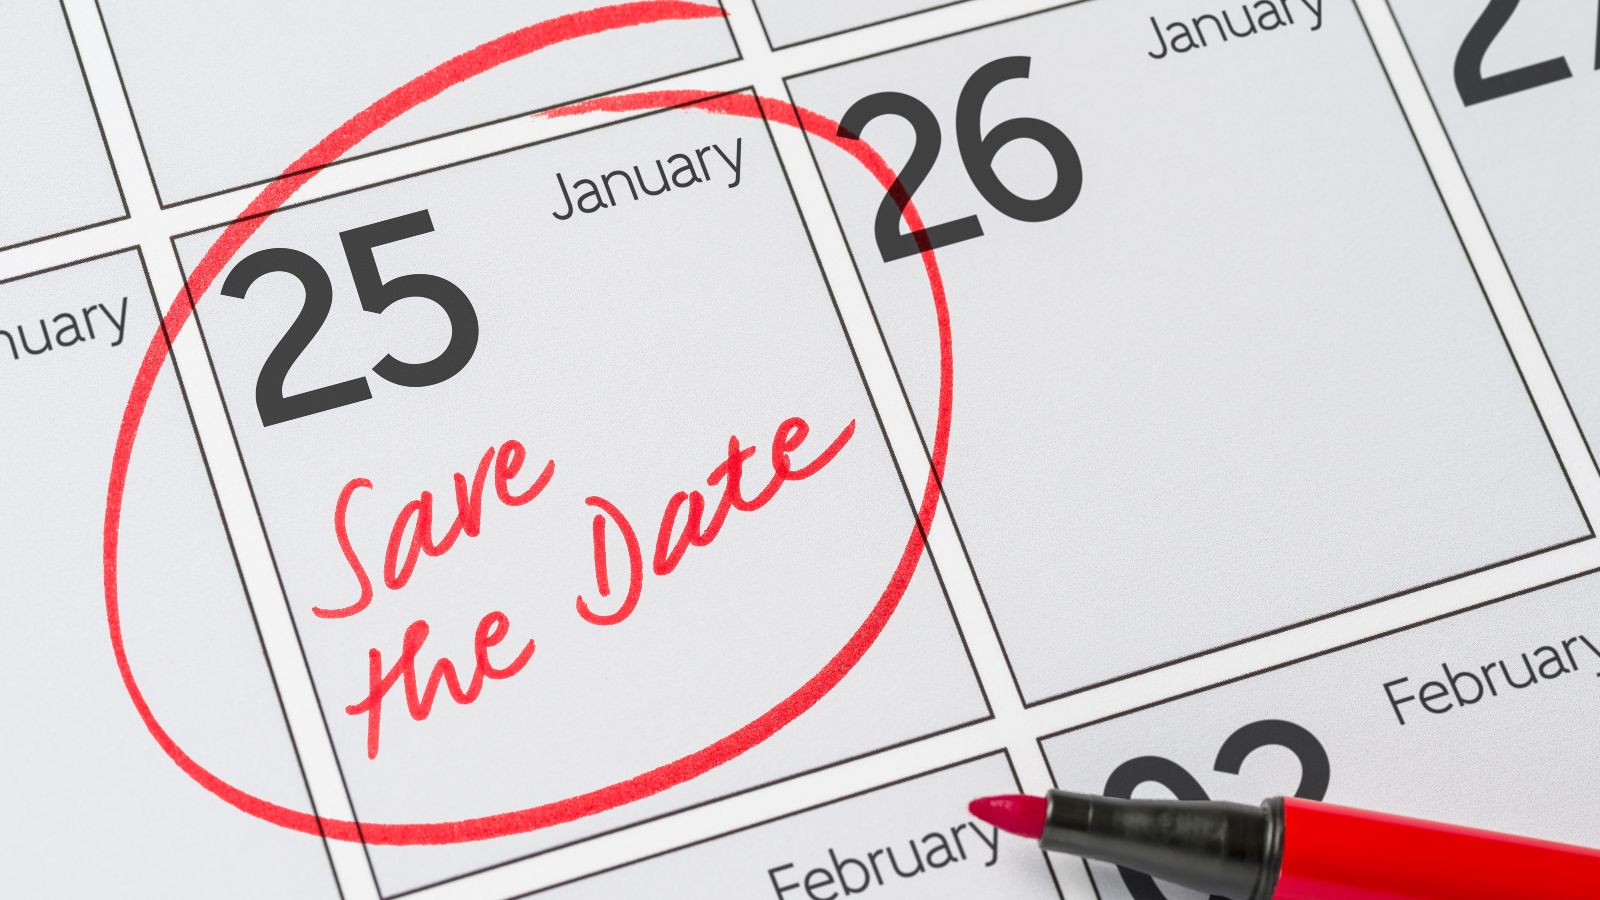 Das Bild zeigt den Ausschnitt eines Kalenders, auf dem der 25. Januar mit dem Hinweis „Save the date“ markiert ist.